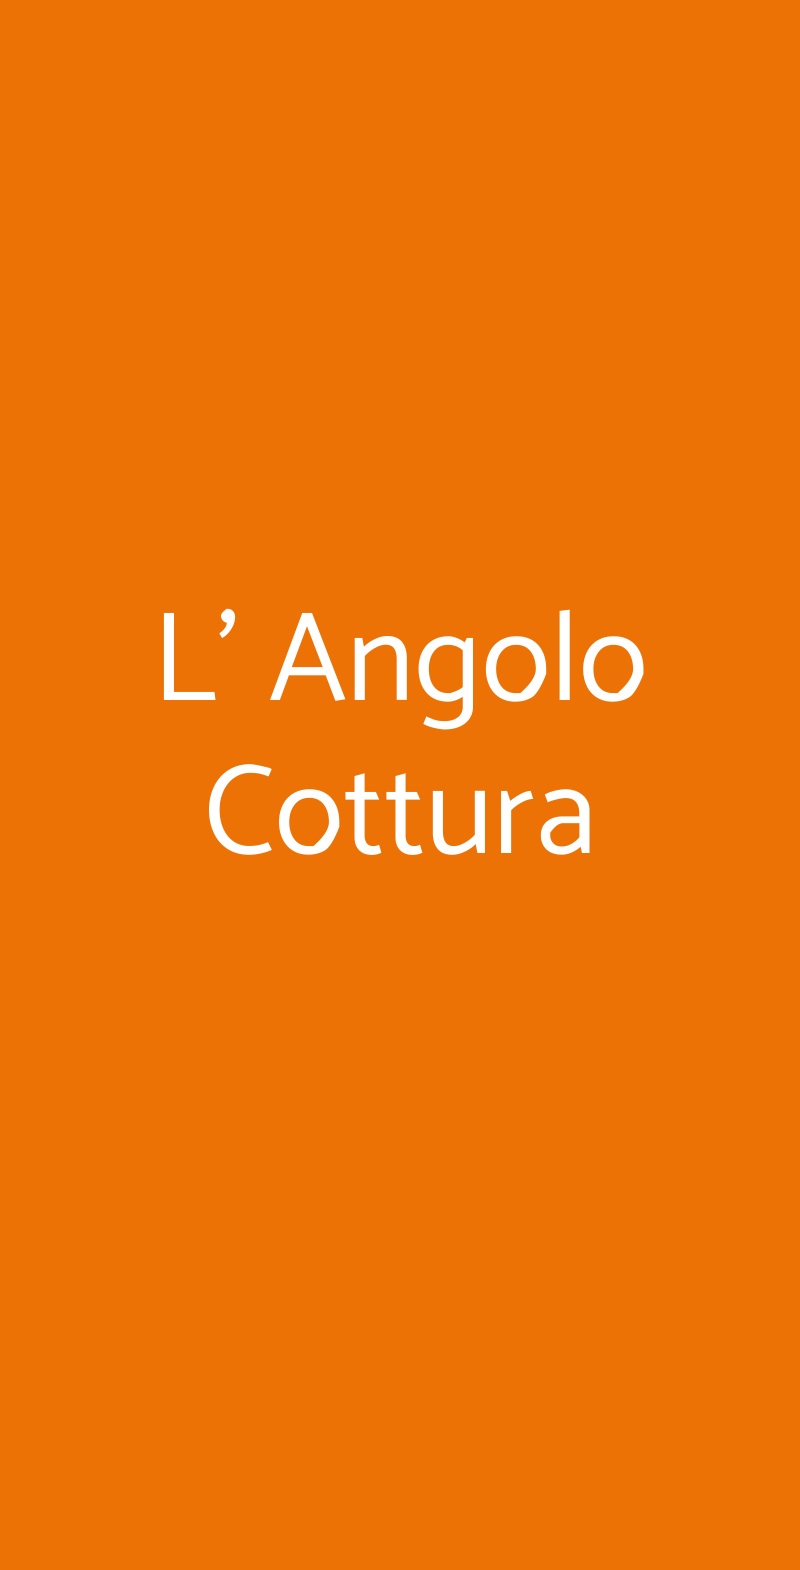 L' Angolo Cottura Napoli menù 1 pagina